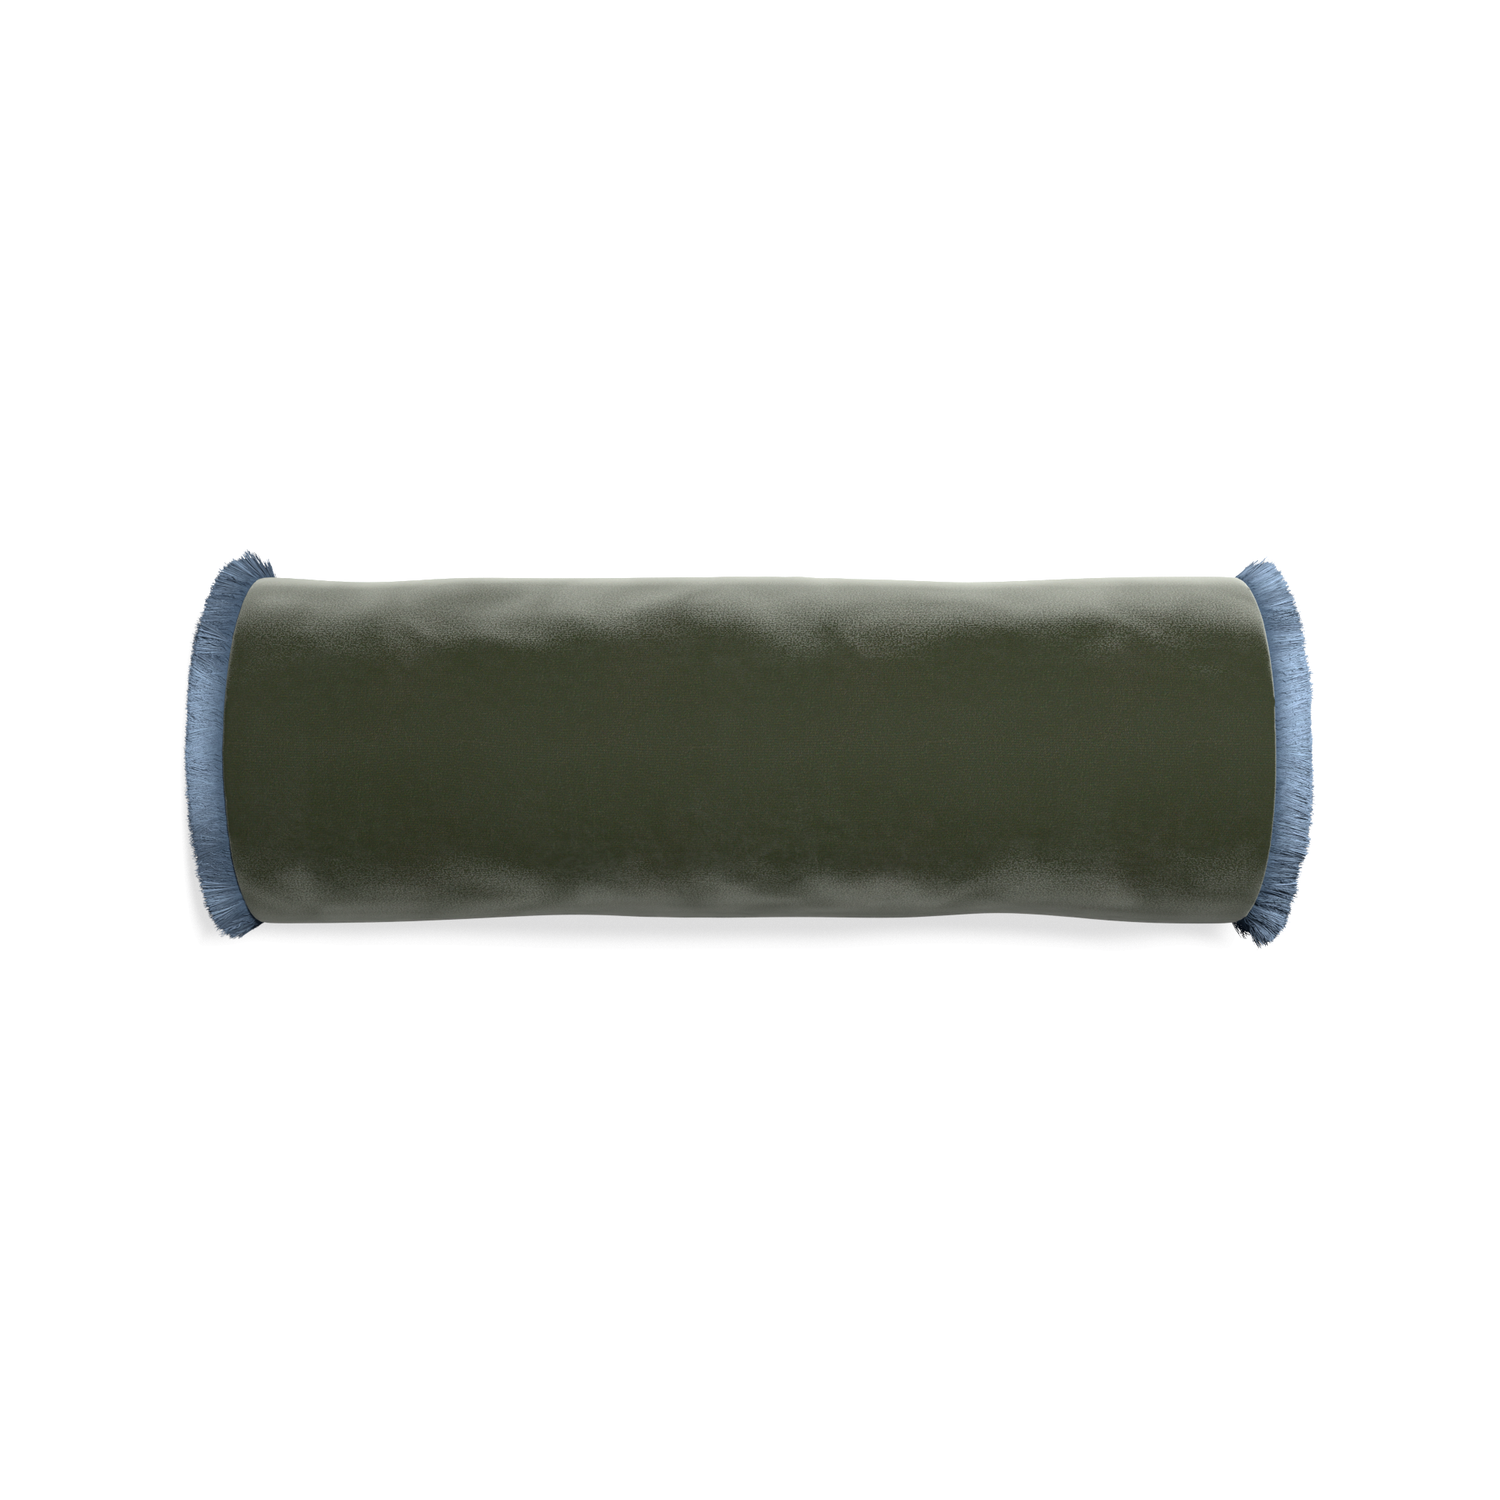 bolster fern green velvet pillow with sky blue fringe